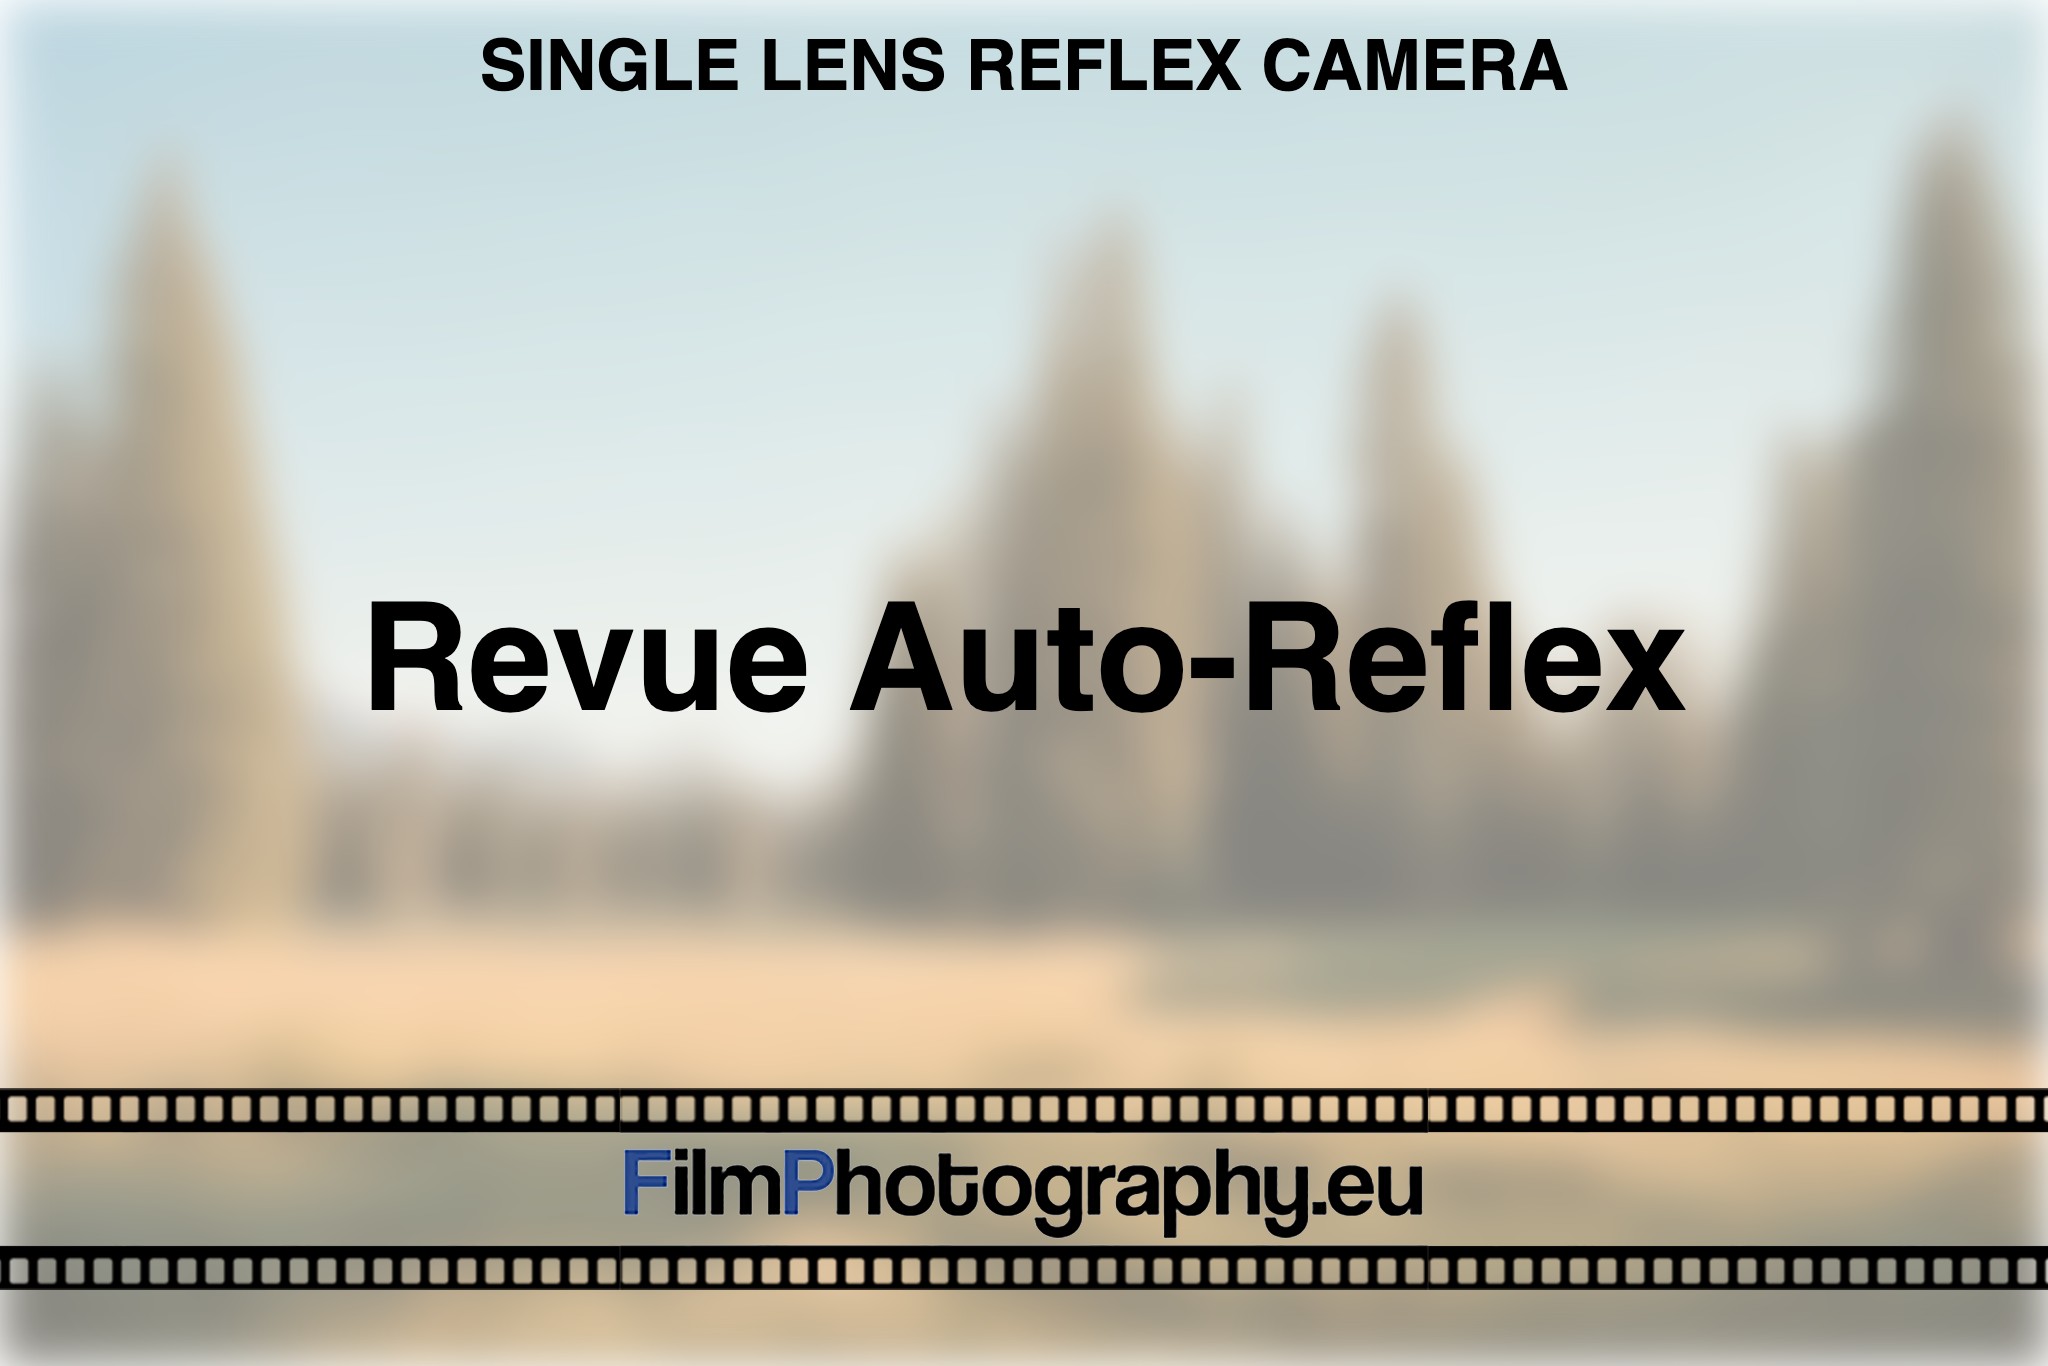 revue-auto-reflex-single-lens-reflex-camera-bnv